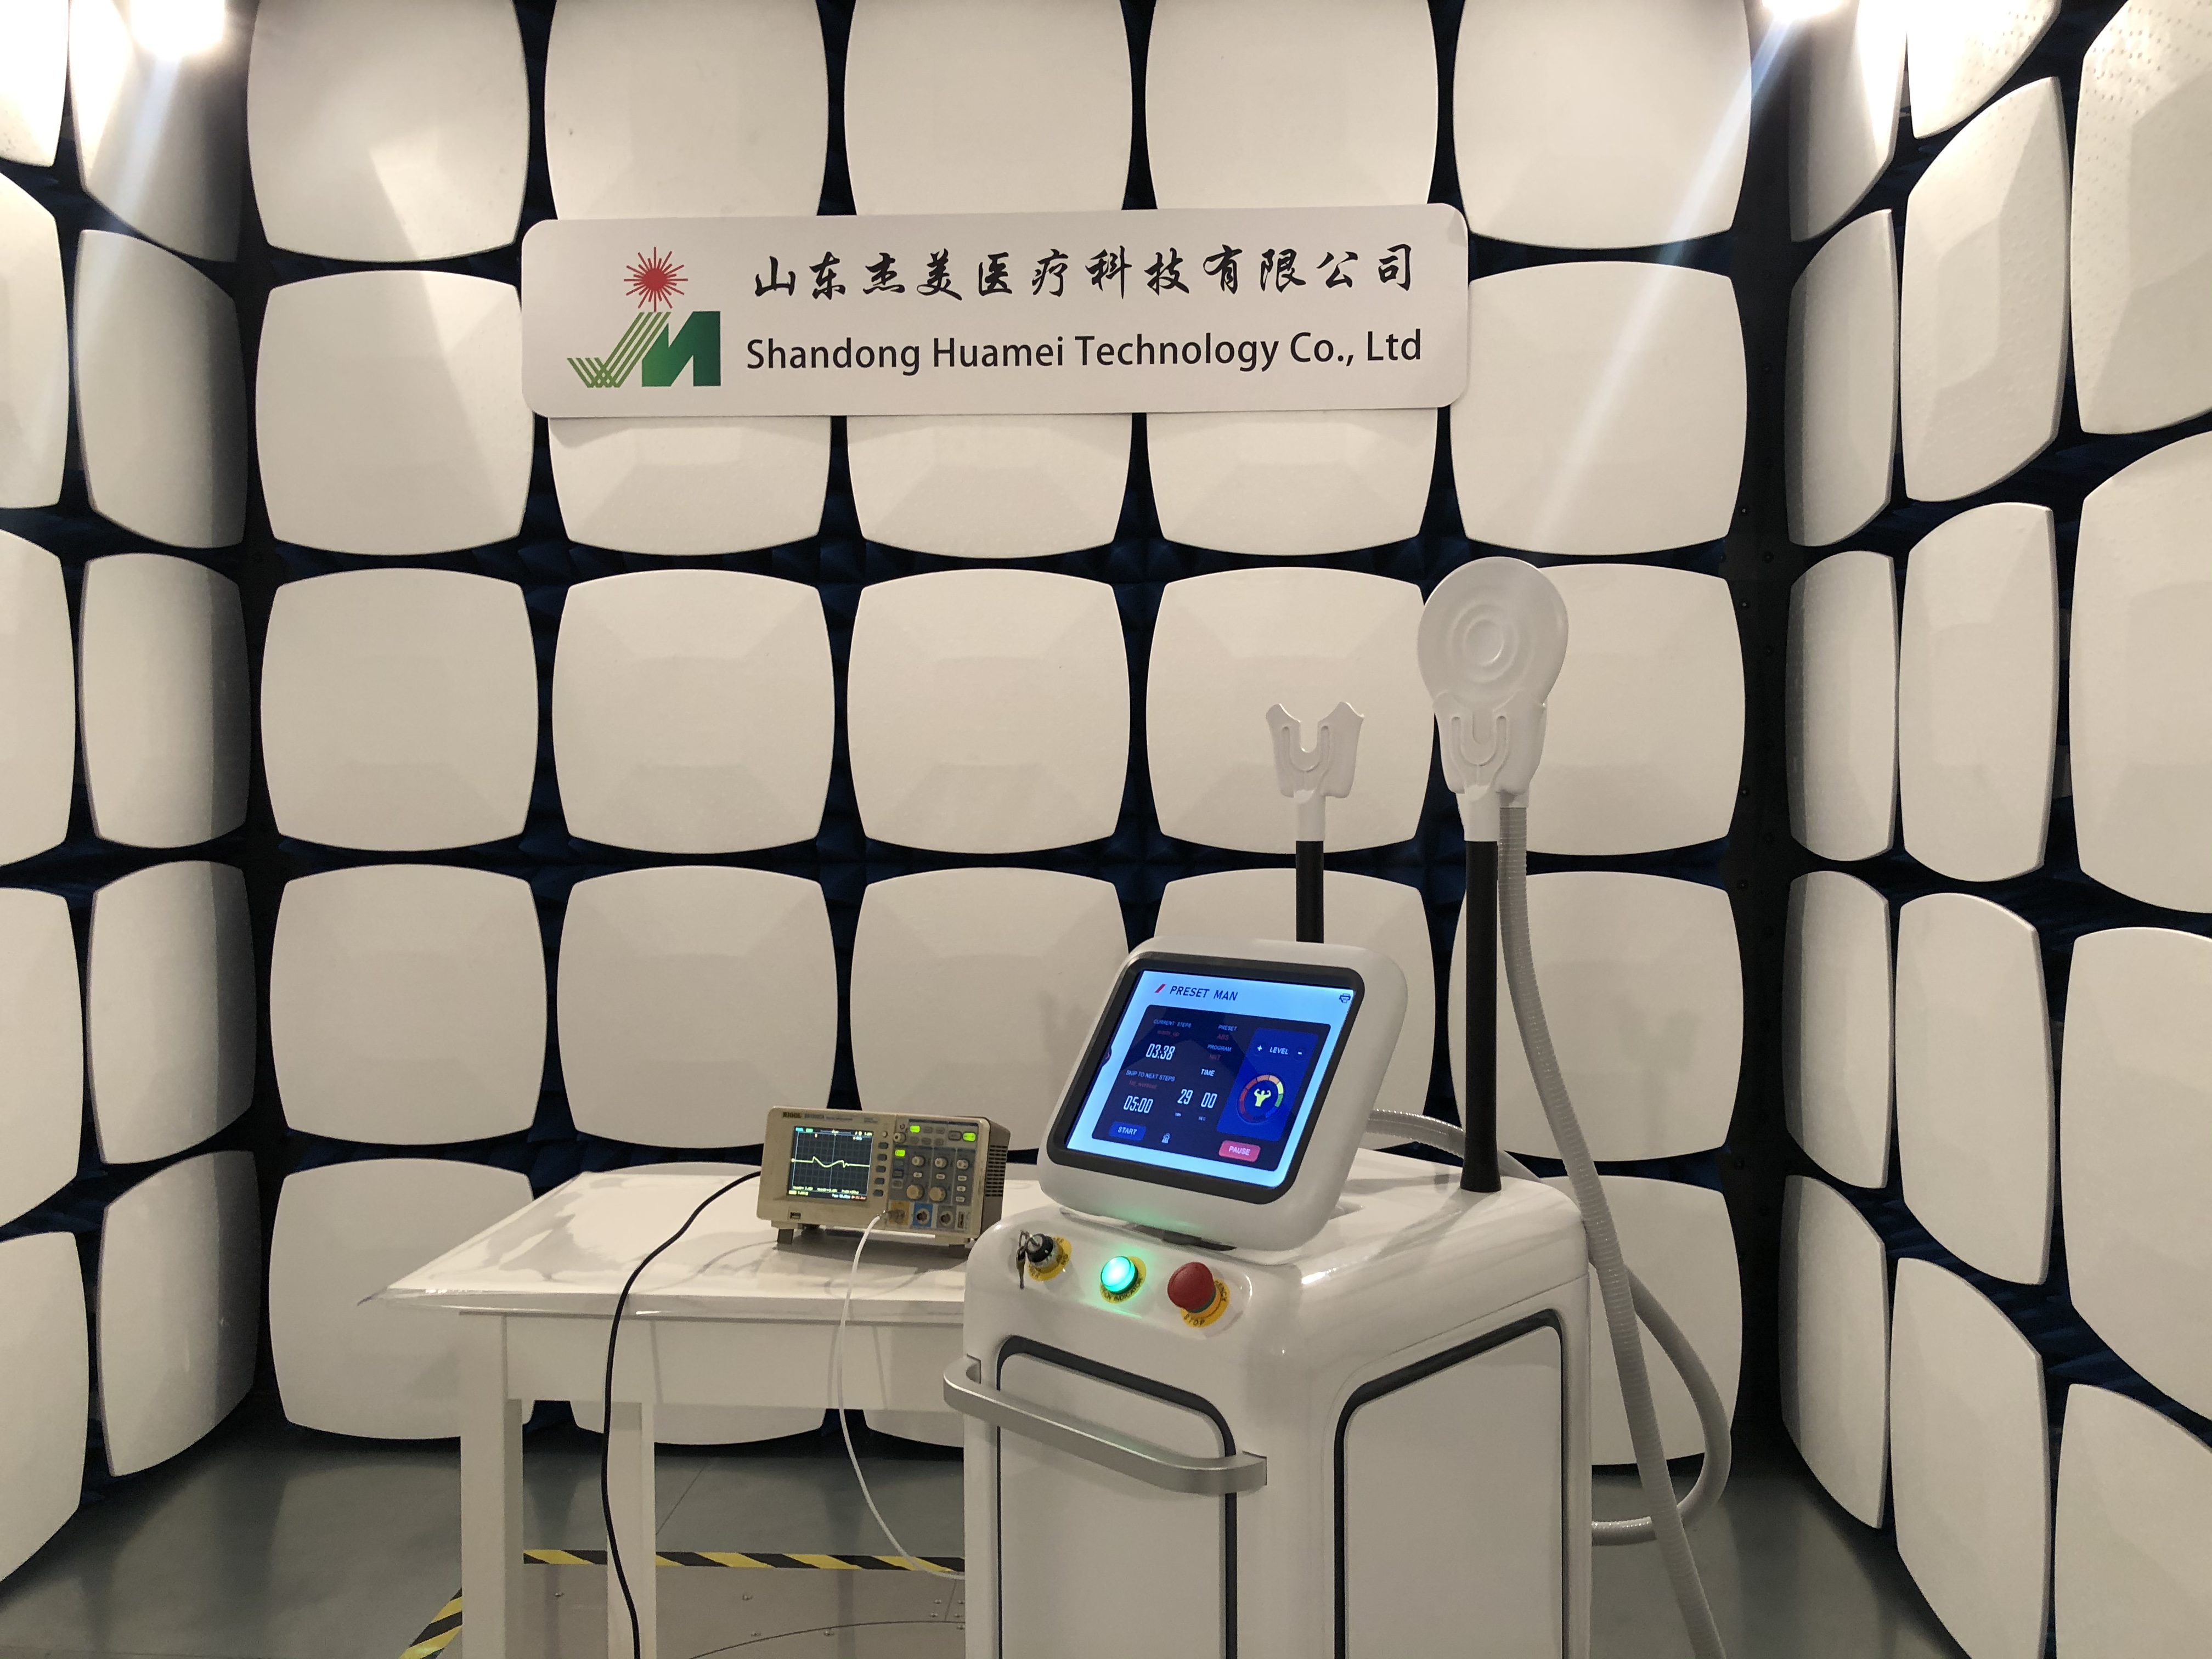 શેન્ડોંગ હુઆમેઇ ટેકનોલોજી કંપની લિમિટેડ ખાતે ઇલેક્ટ્રોમેગ્નેટિક લેબોરેટરી.